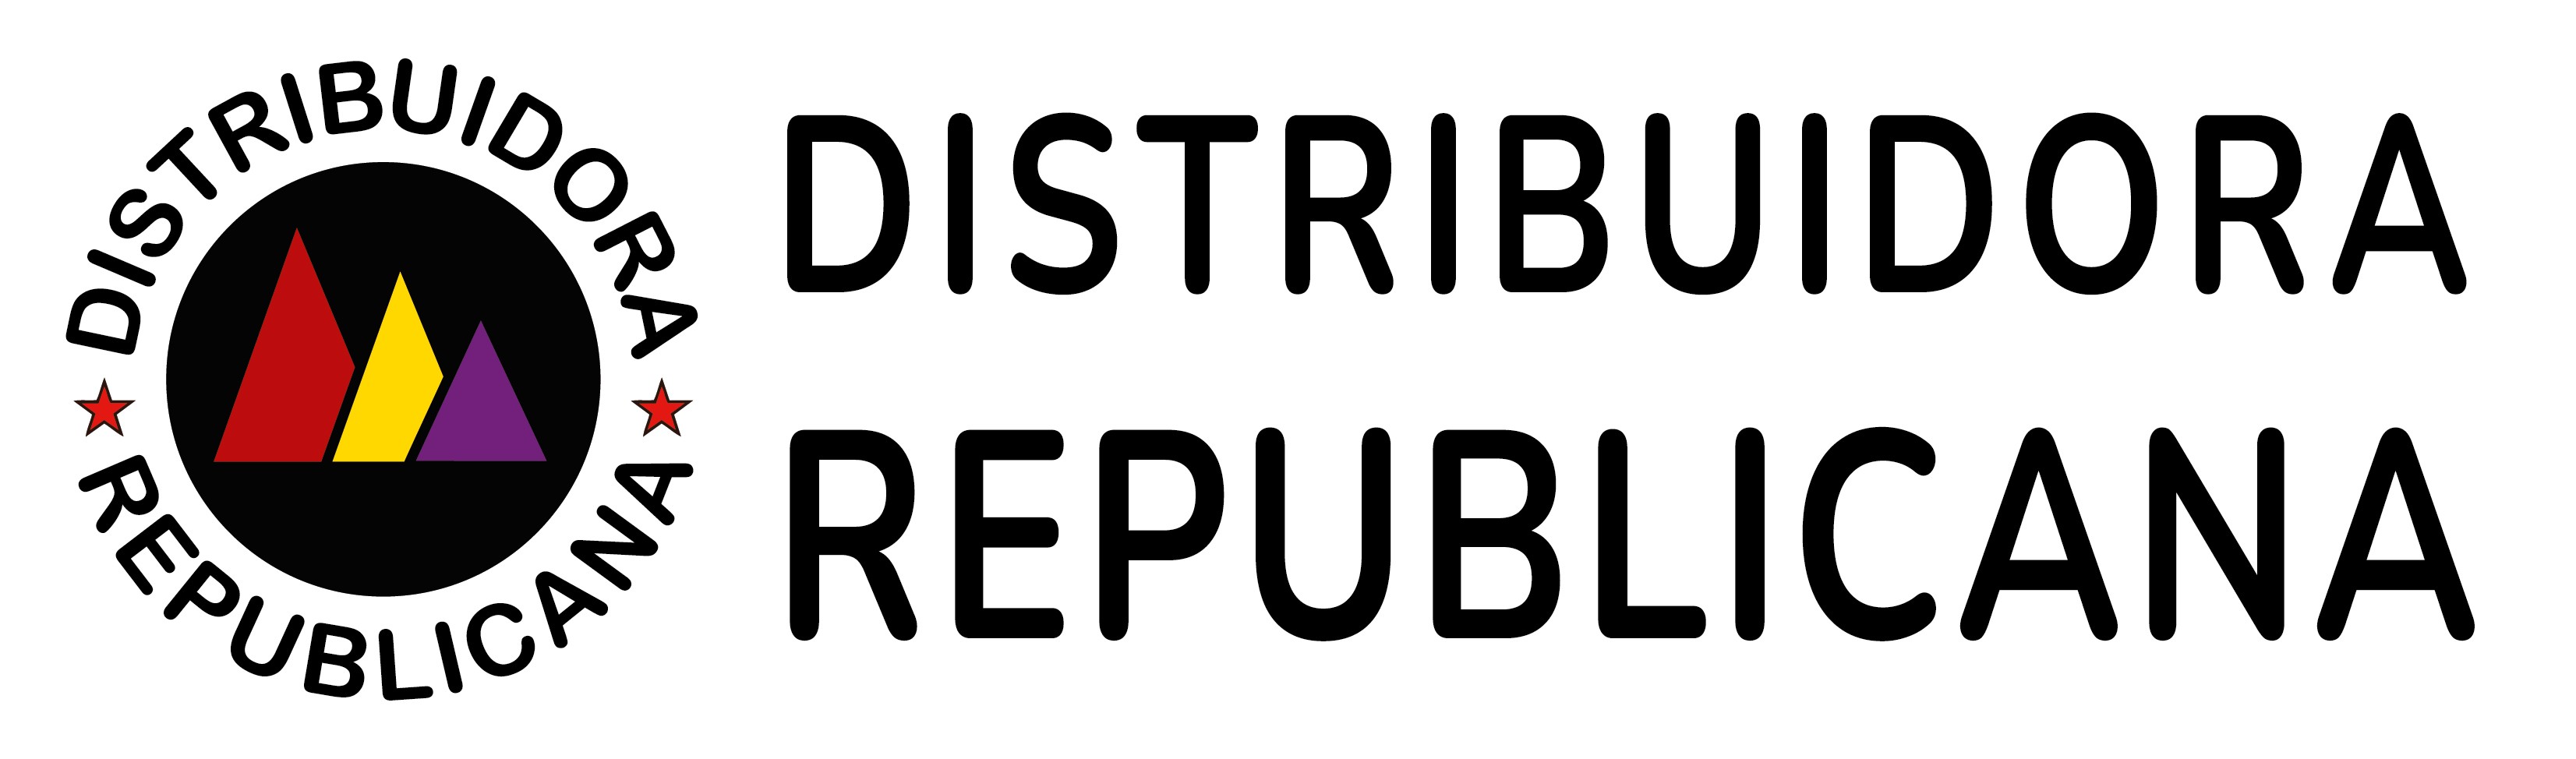 Distribuidora Republicana